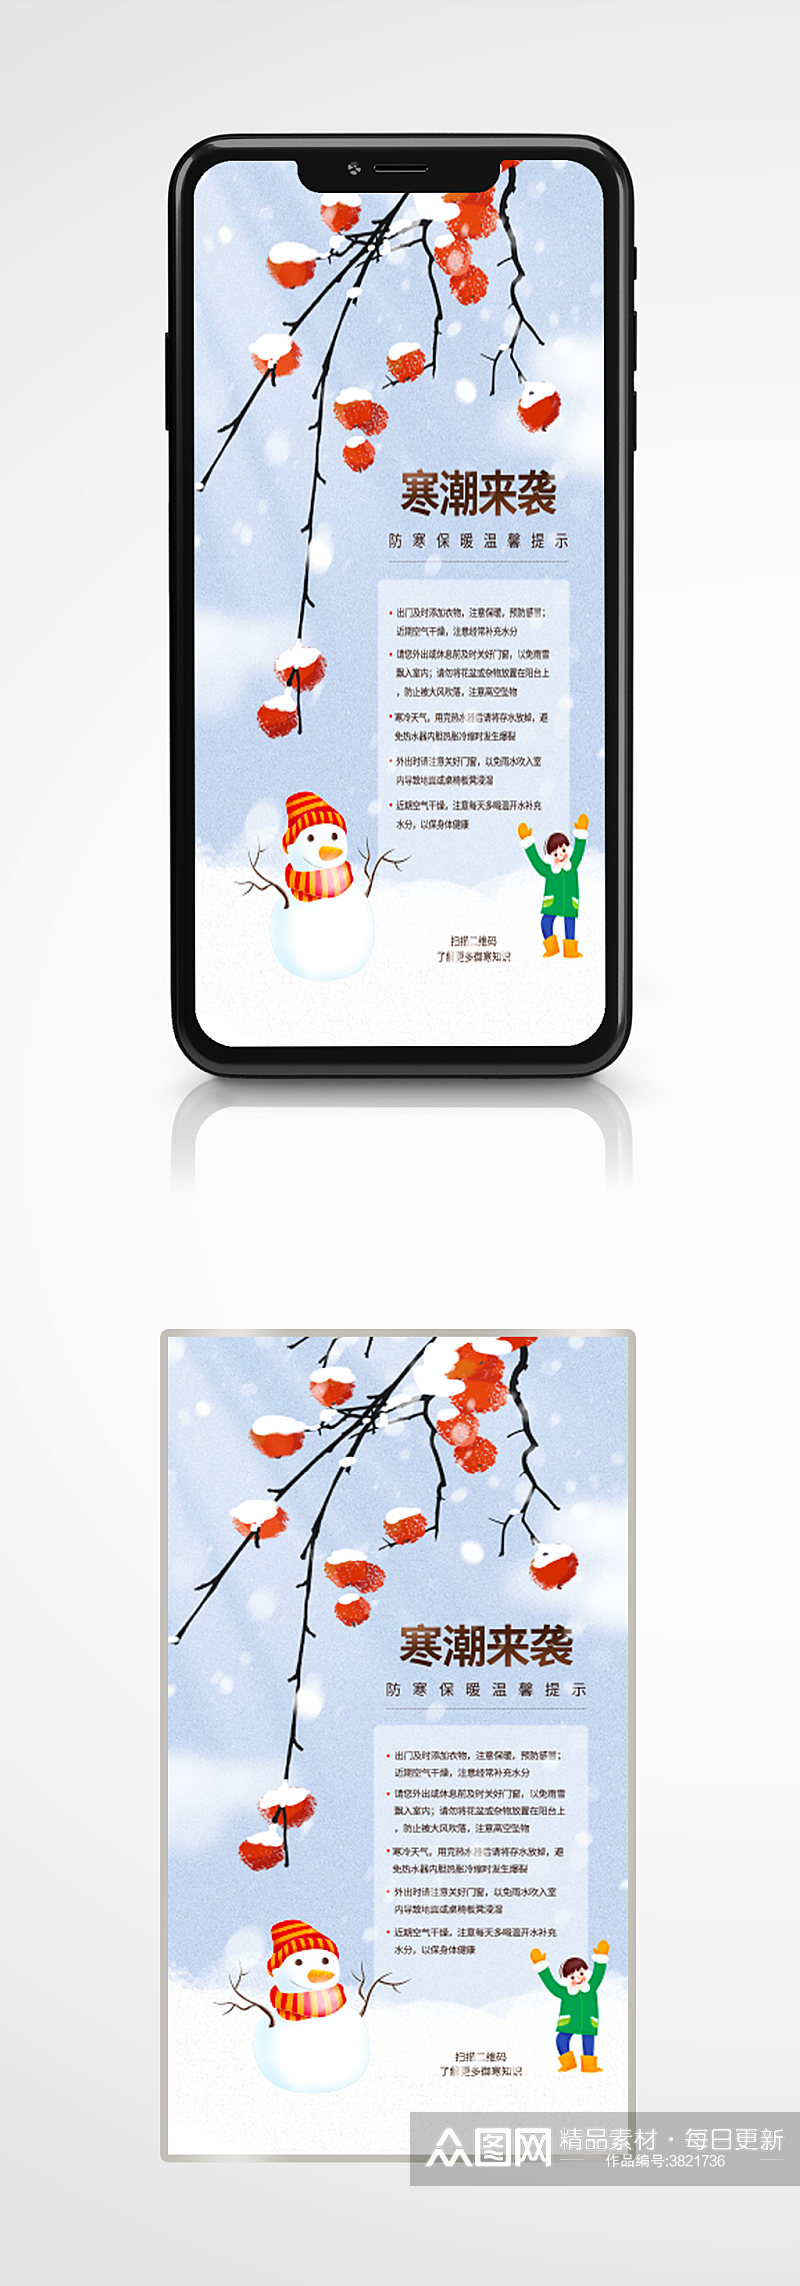 寒潮御寒保暖温馨提示卡通插画手机海报素材